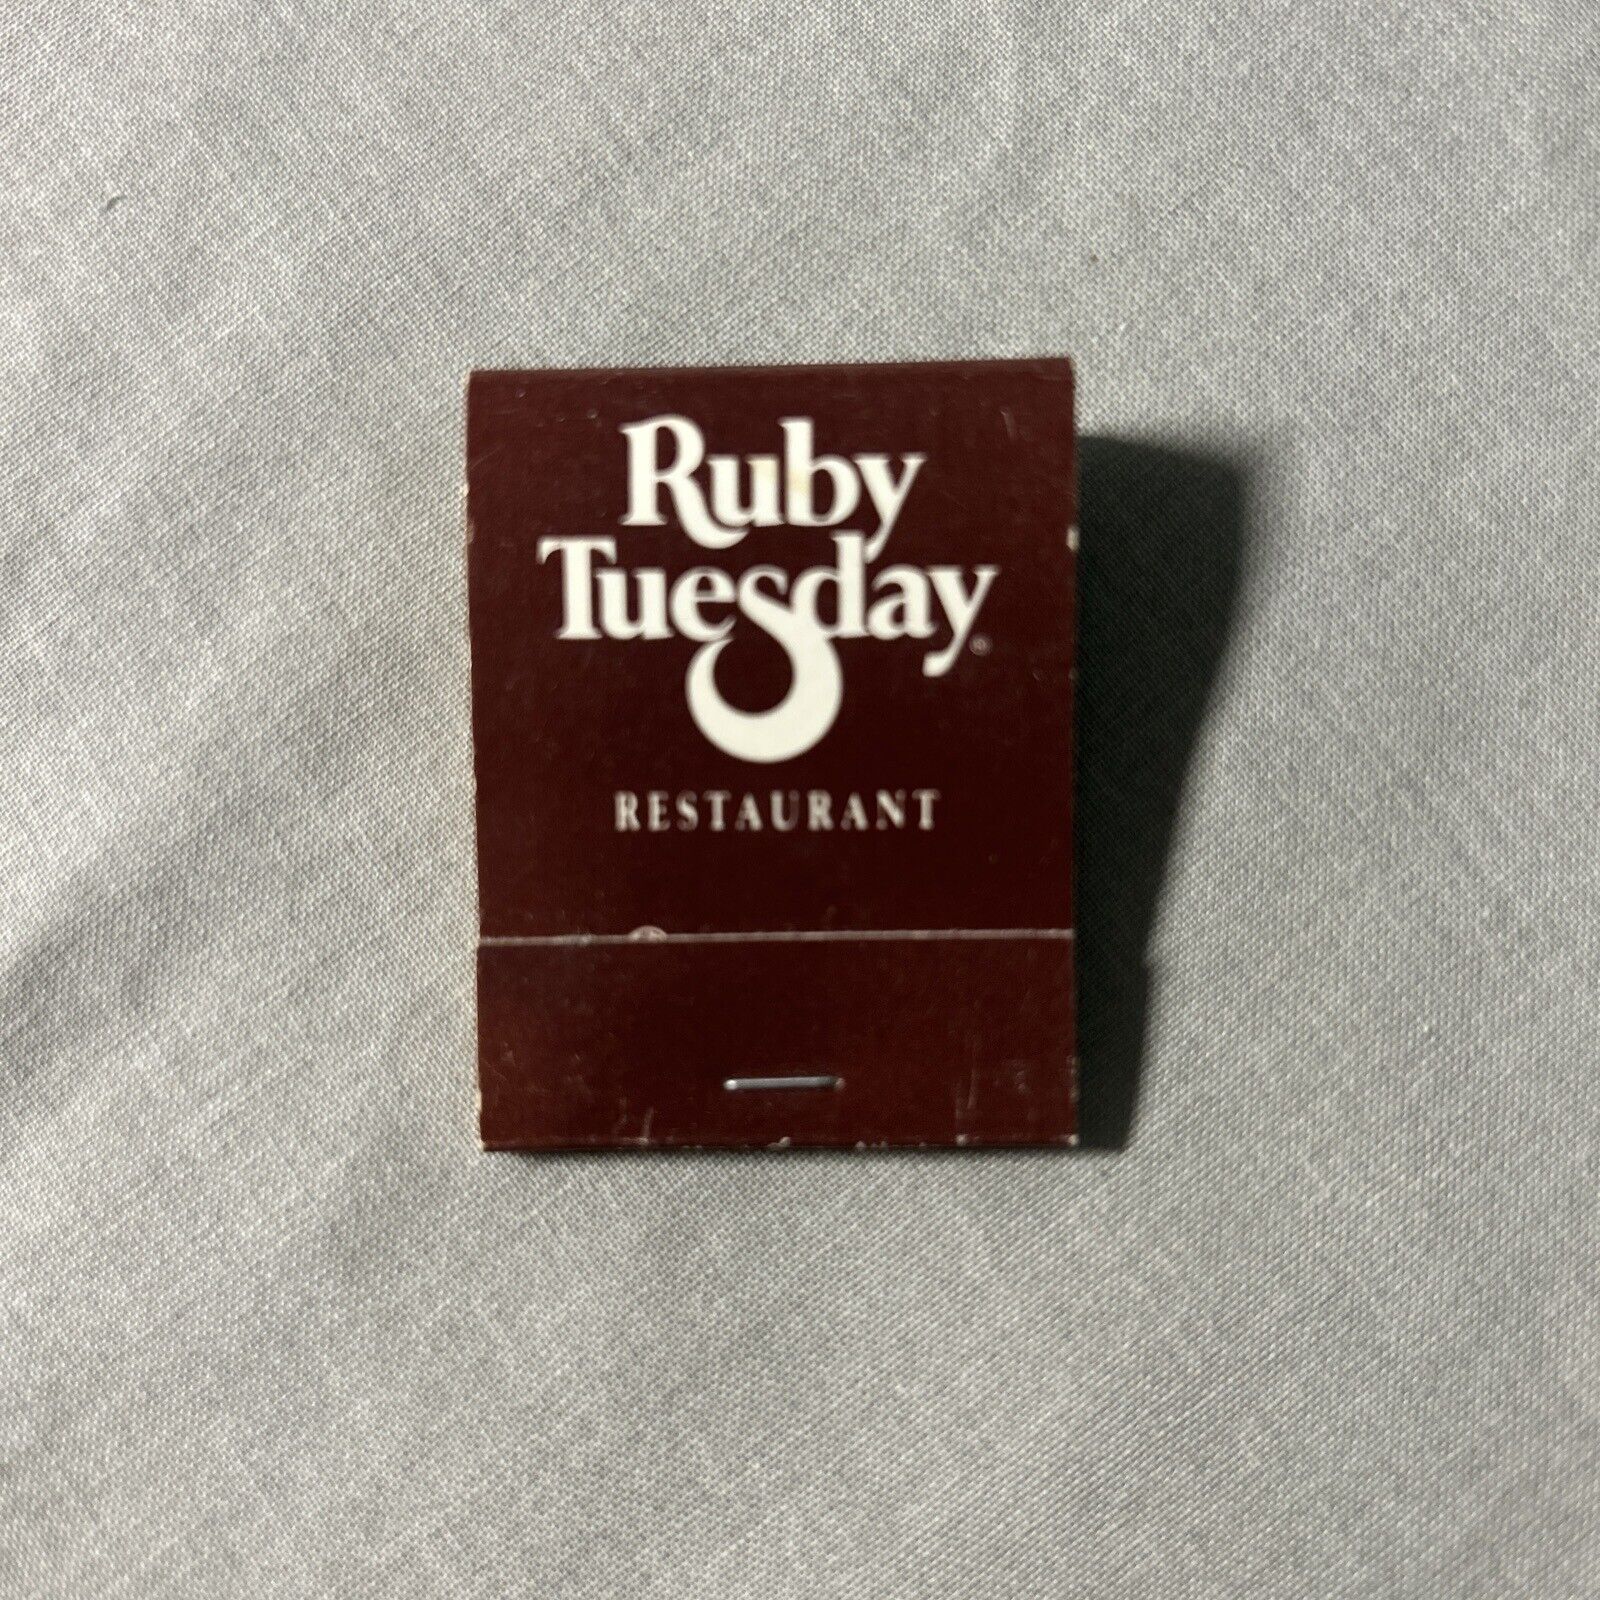 VTG Ruby Tuesday Restaurant Full Matchbook